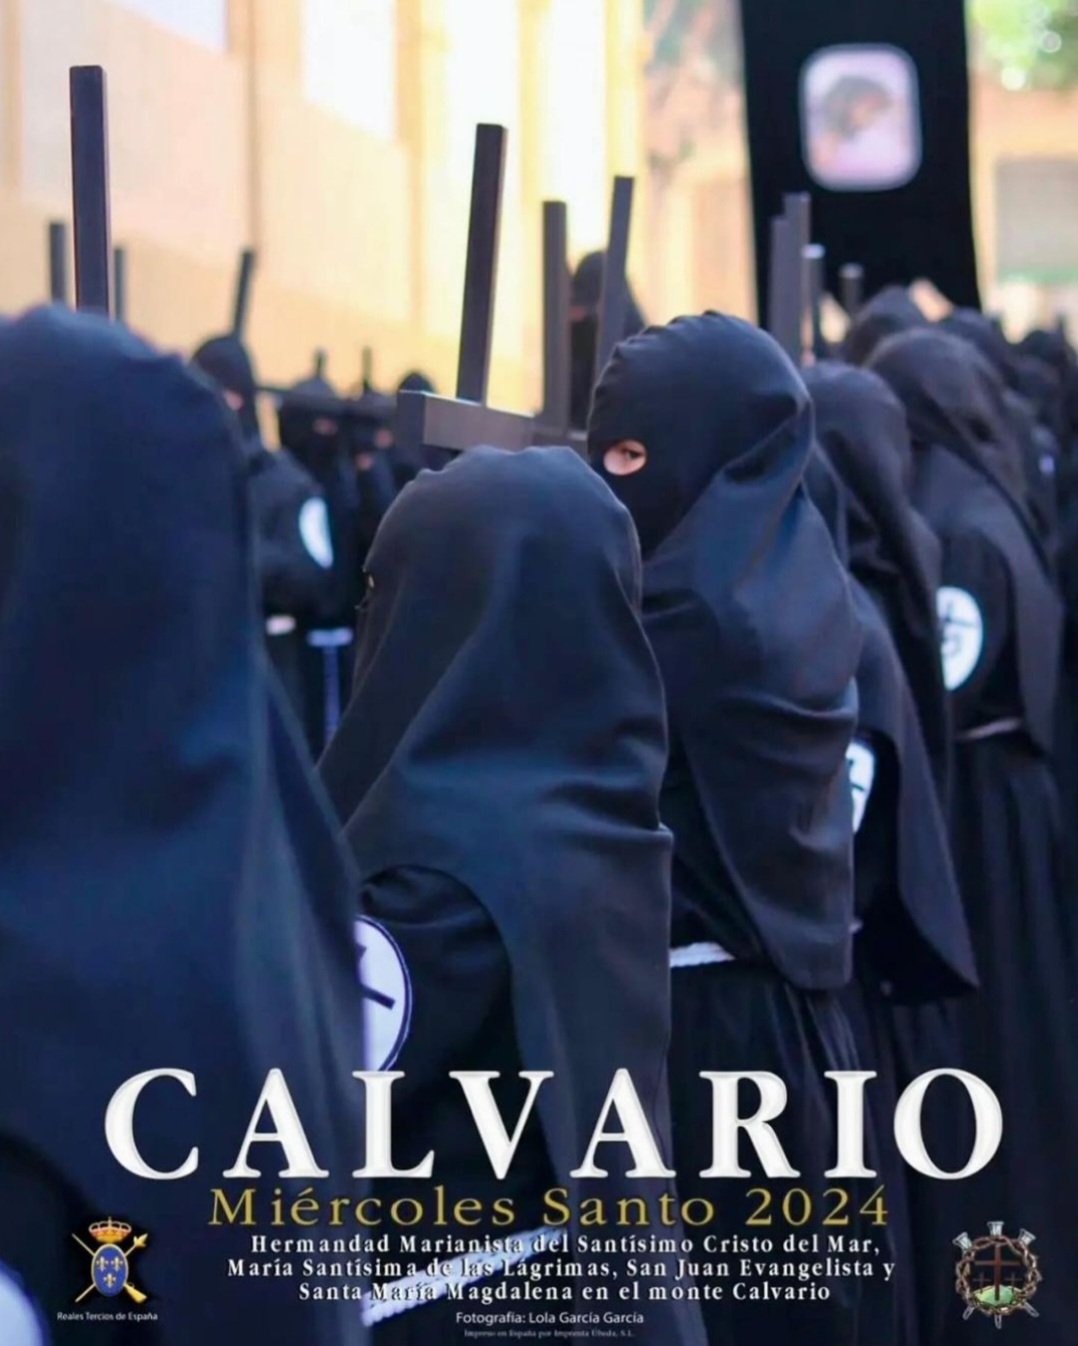 Calvario - Miércoles Santo 2024